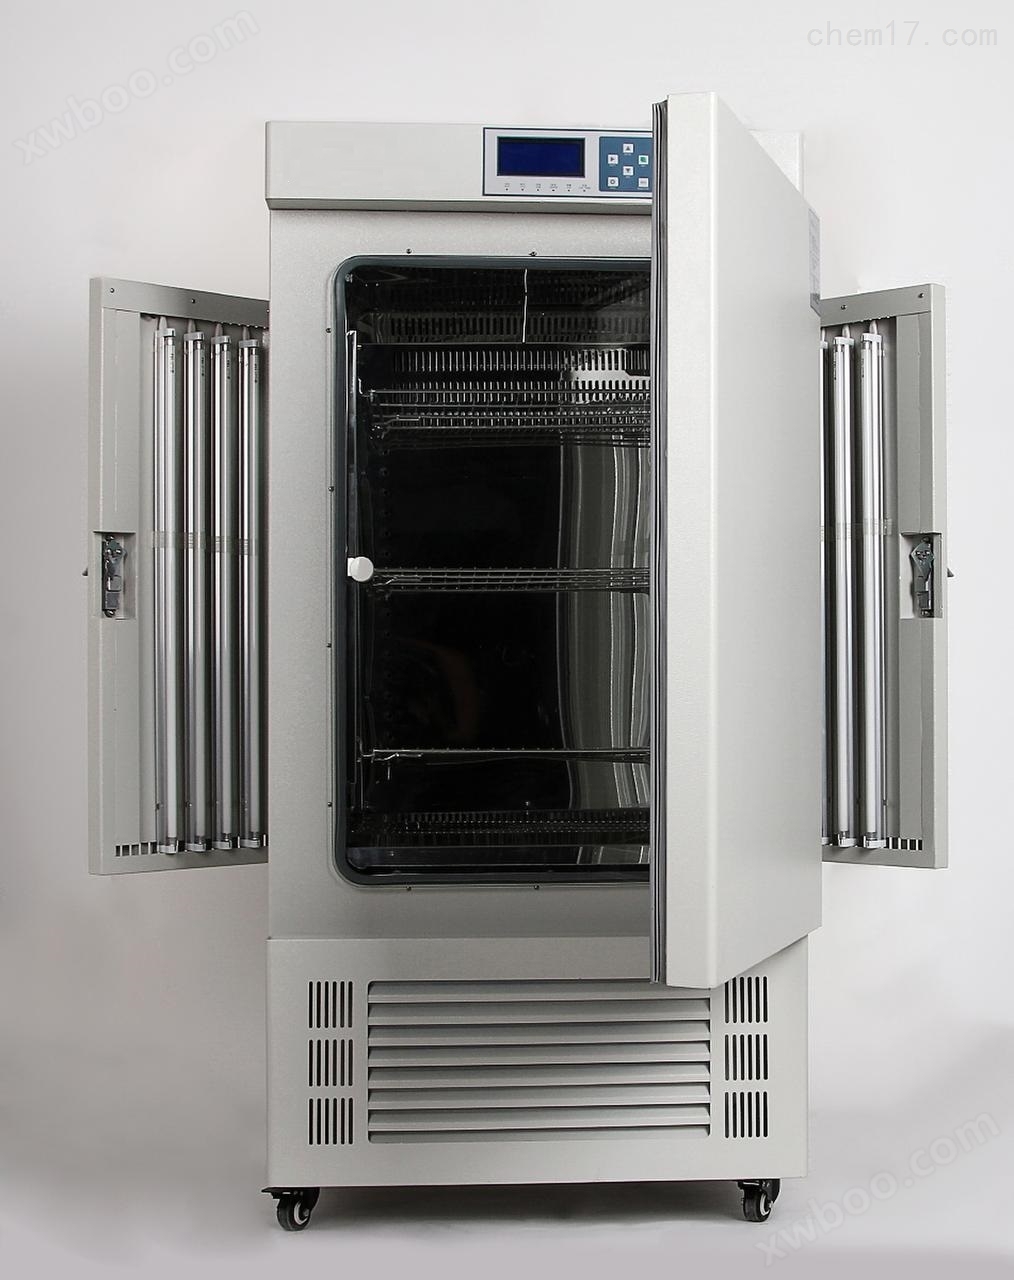 人工气候箱 植物培育箱 光照培育箱 模拟人工气候箱